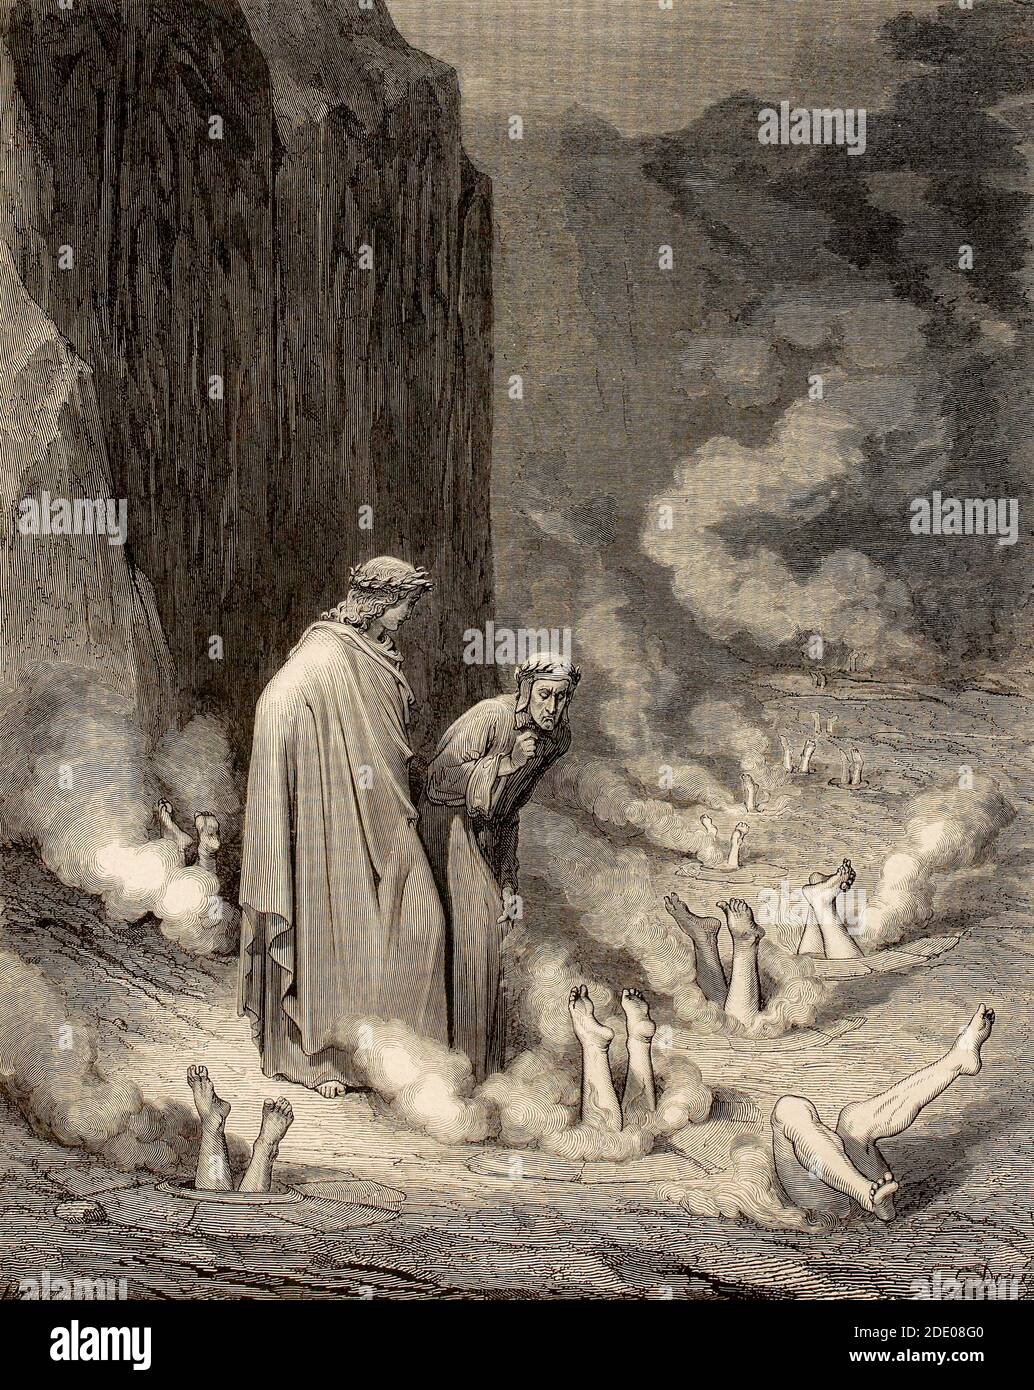 Dante Divina Commedia - Inferno - XIX canto - Dante E Virgilio, il corallo dei simoniaci - VIII Circolo - illustrazione di Gustave Dorè Foto Stock